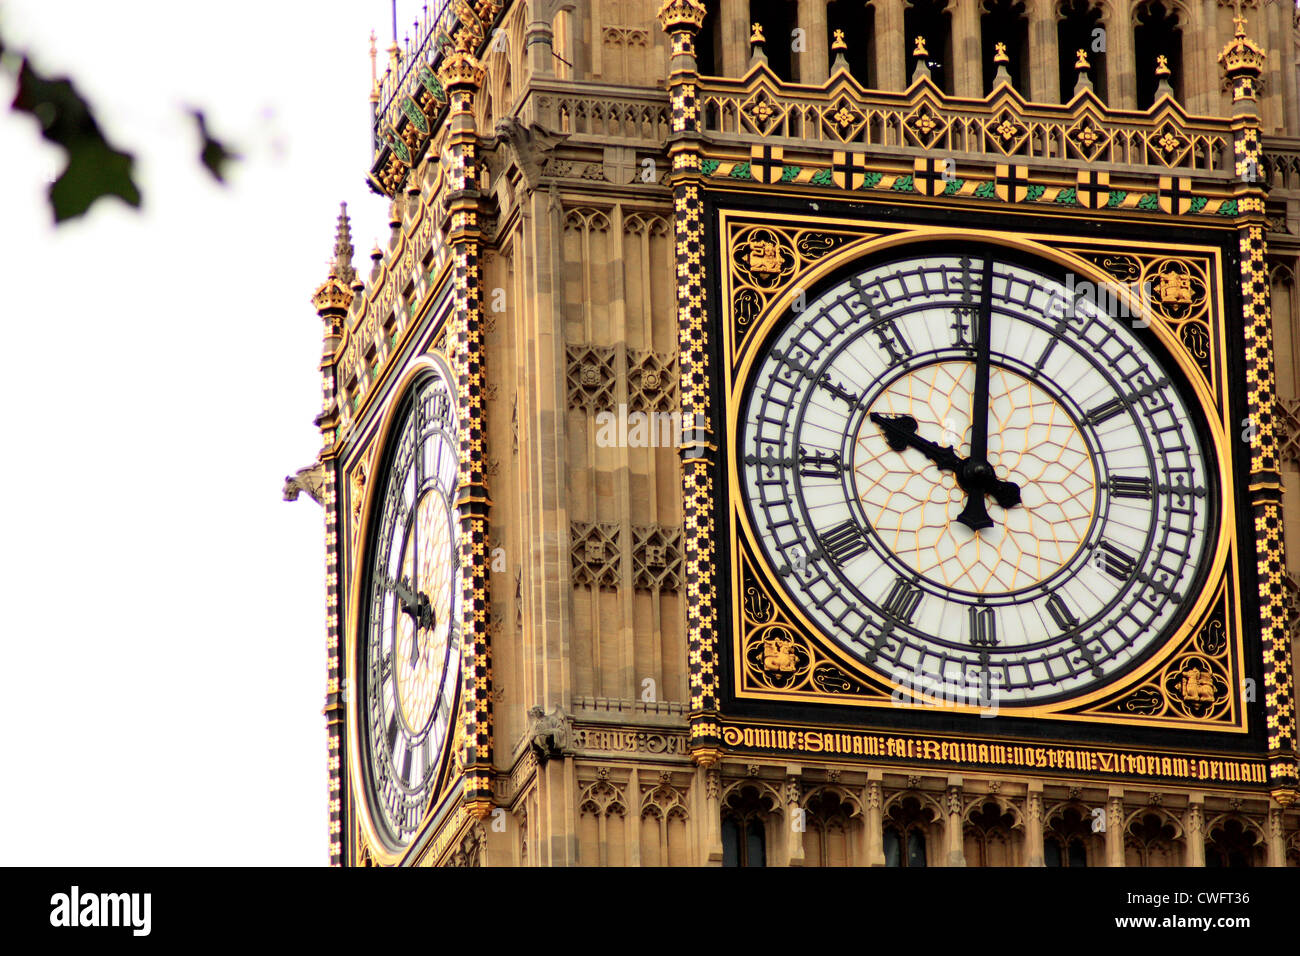 Cara del reloj de la torre del reloj del Palacio de Westminster. Foto de stock